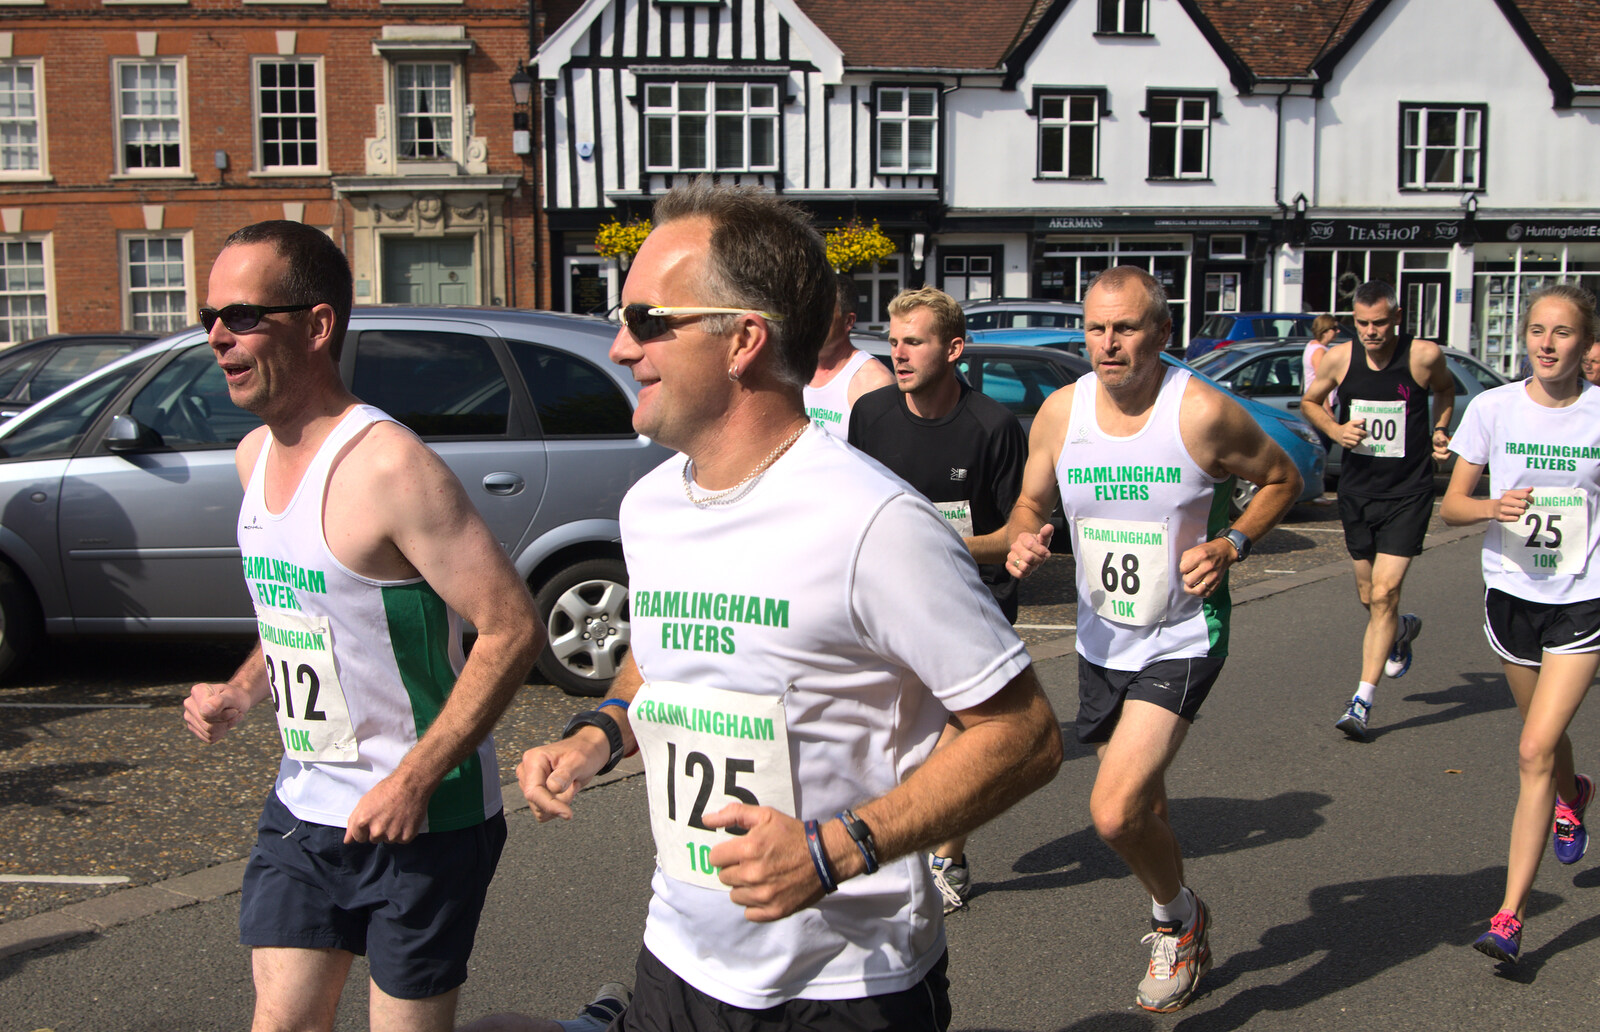 The Framlingham Flyers in a pack from The Framlingham 10k Run, Suffolk - 31st August 2014